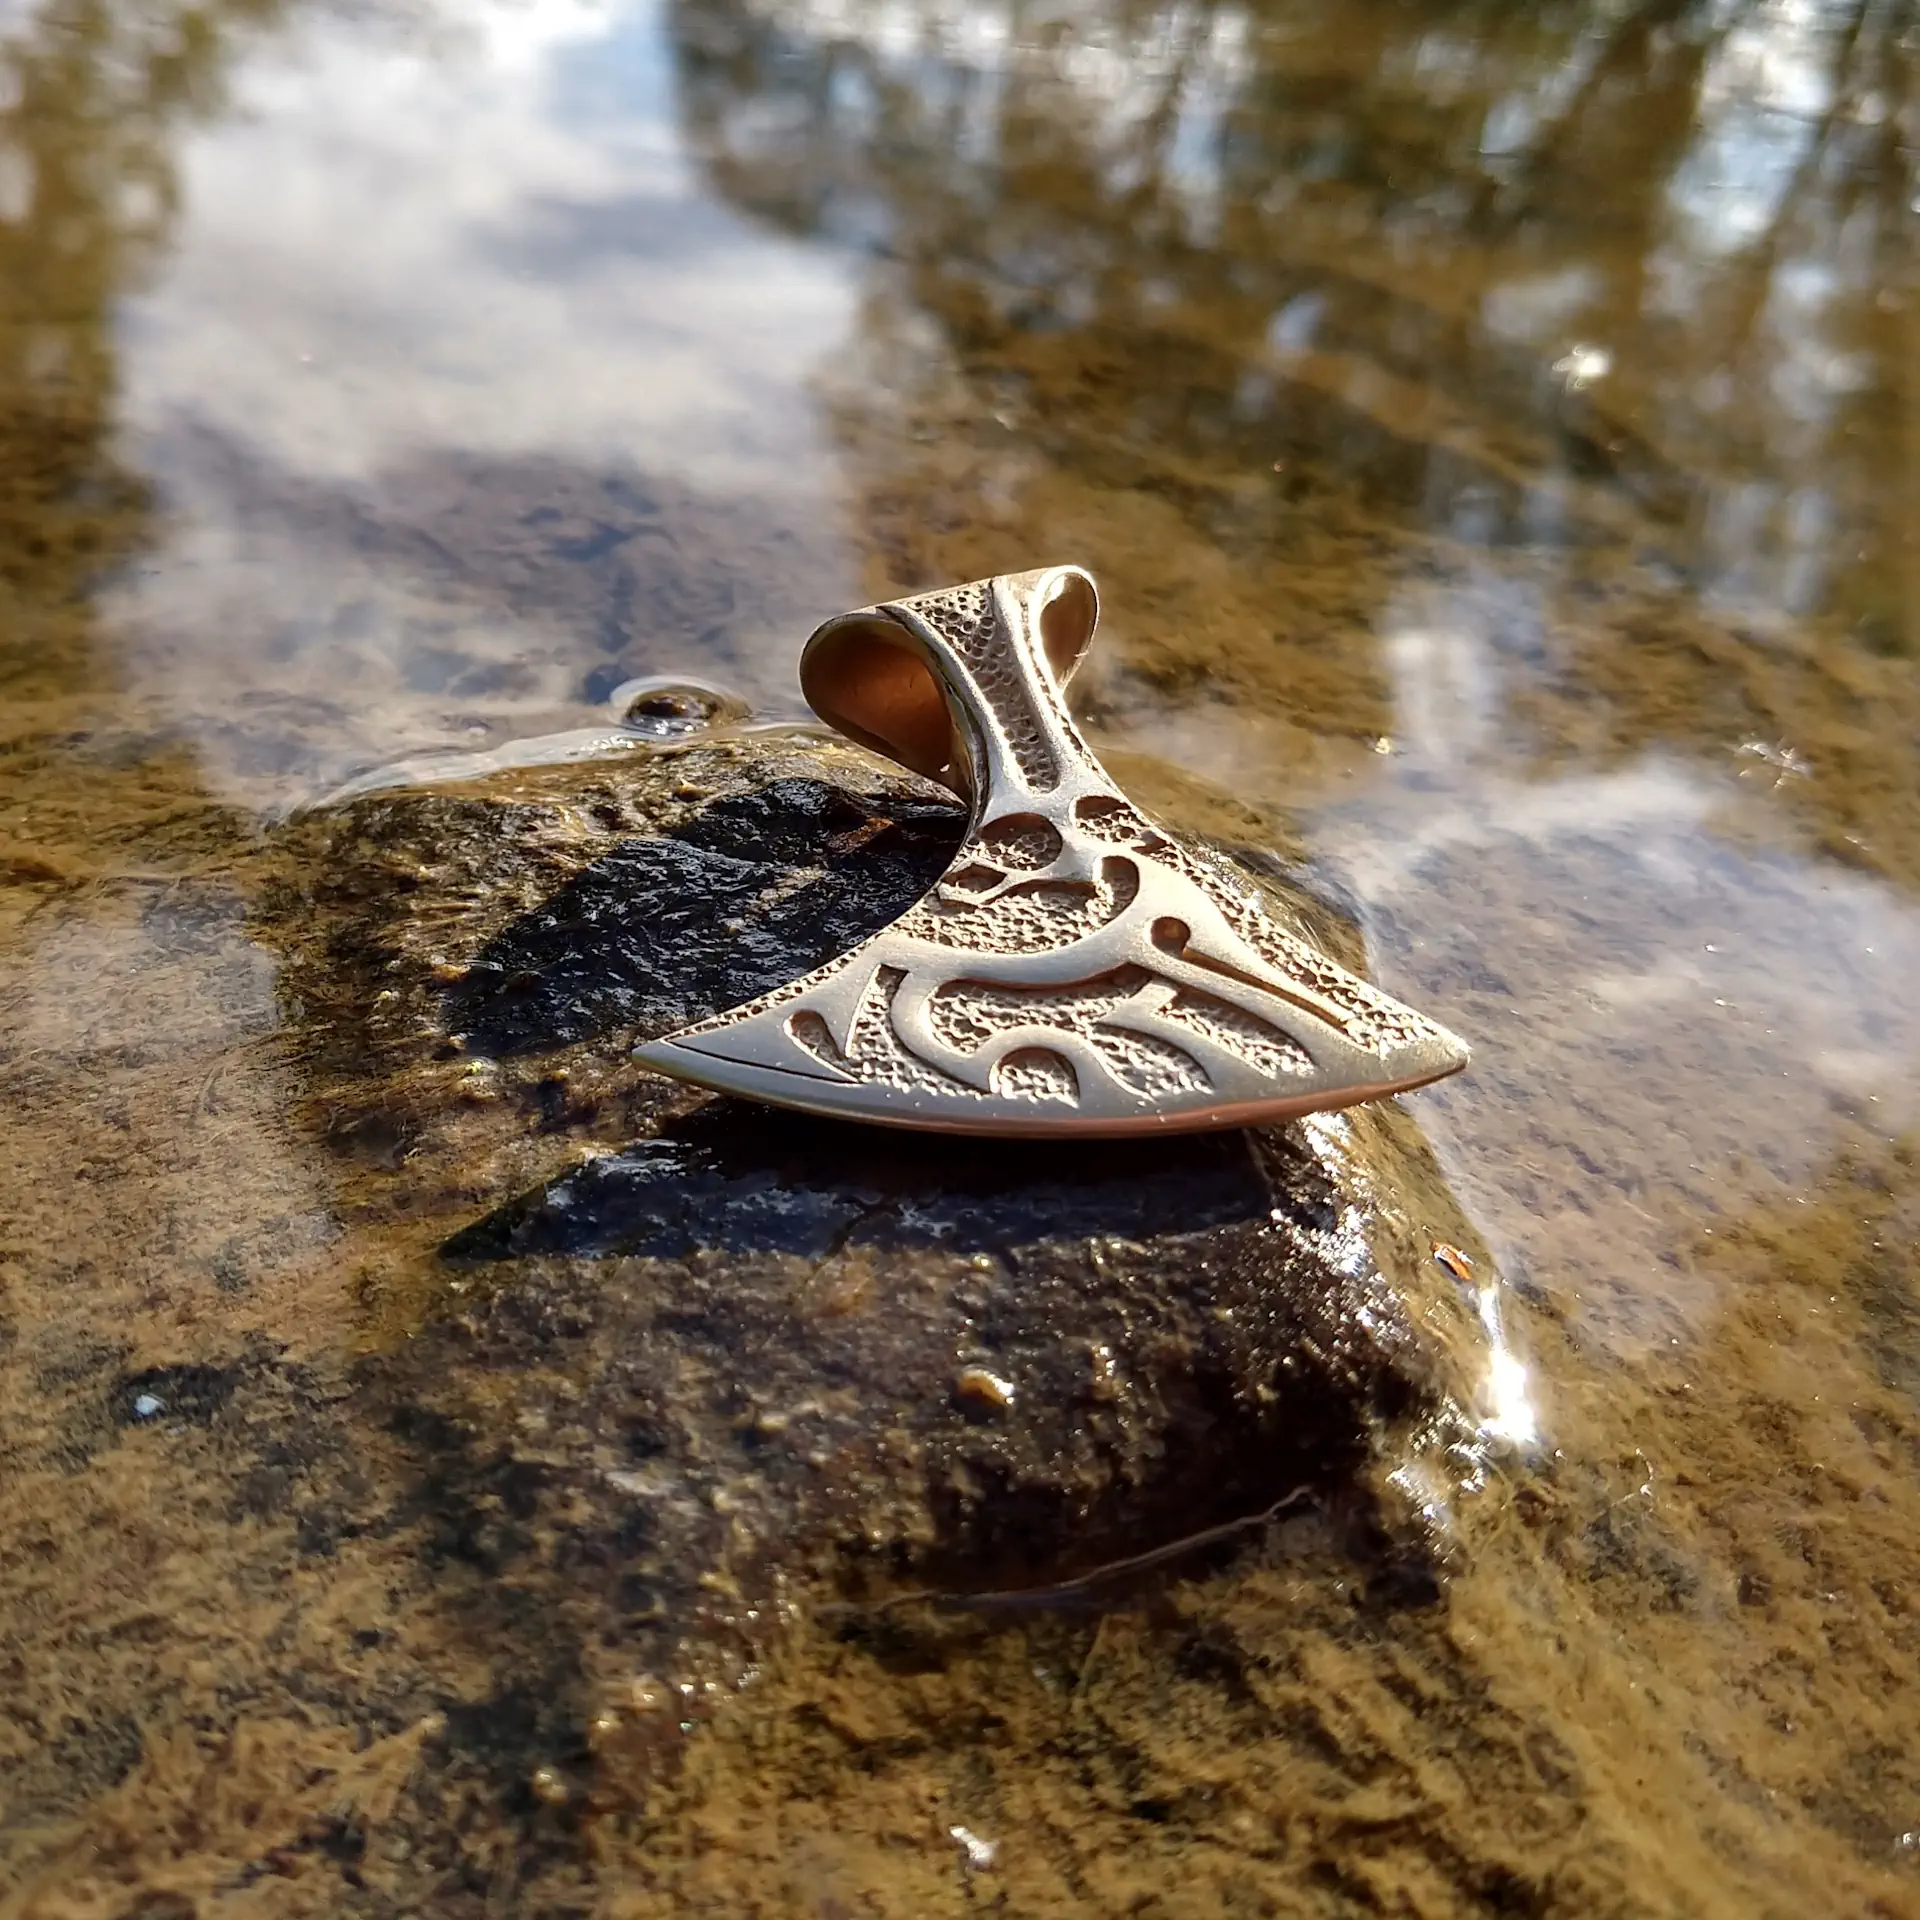 Die Gehörnte in Bronze gegossen aus dem See emporsteigend